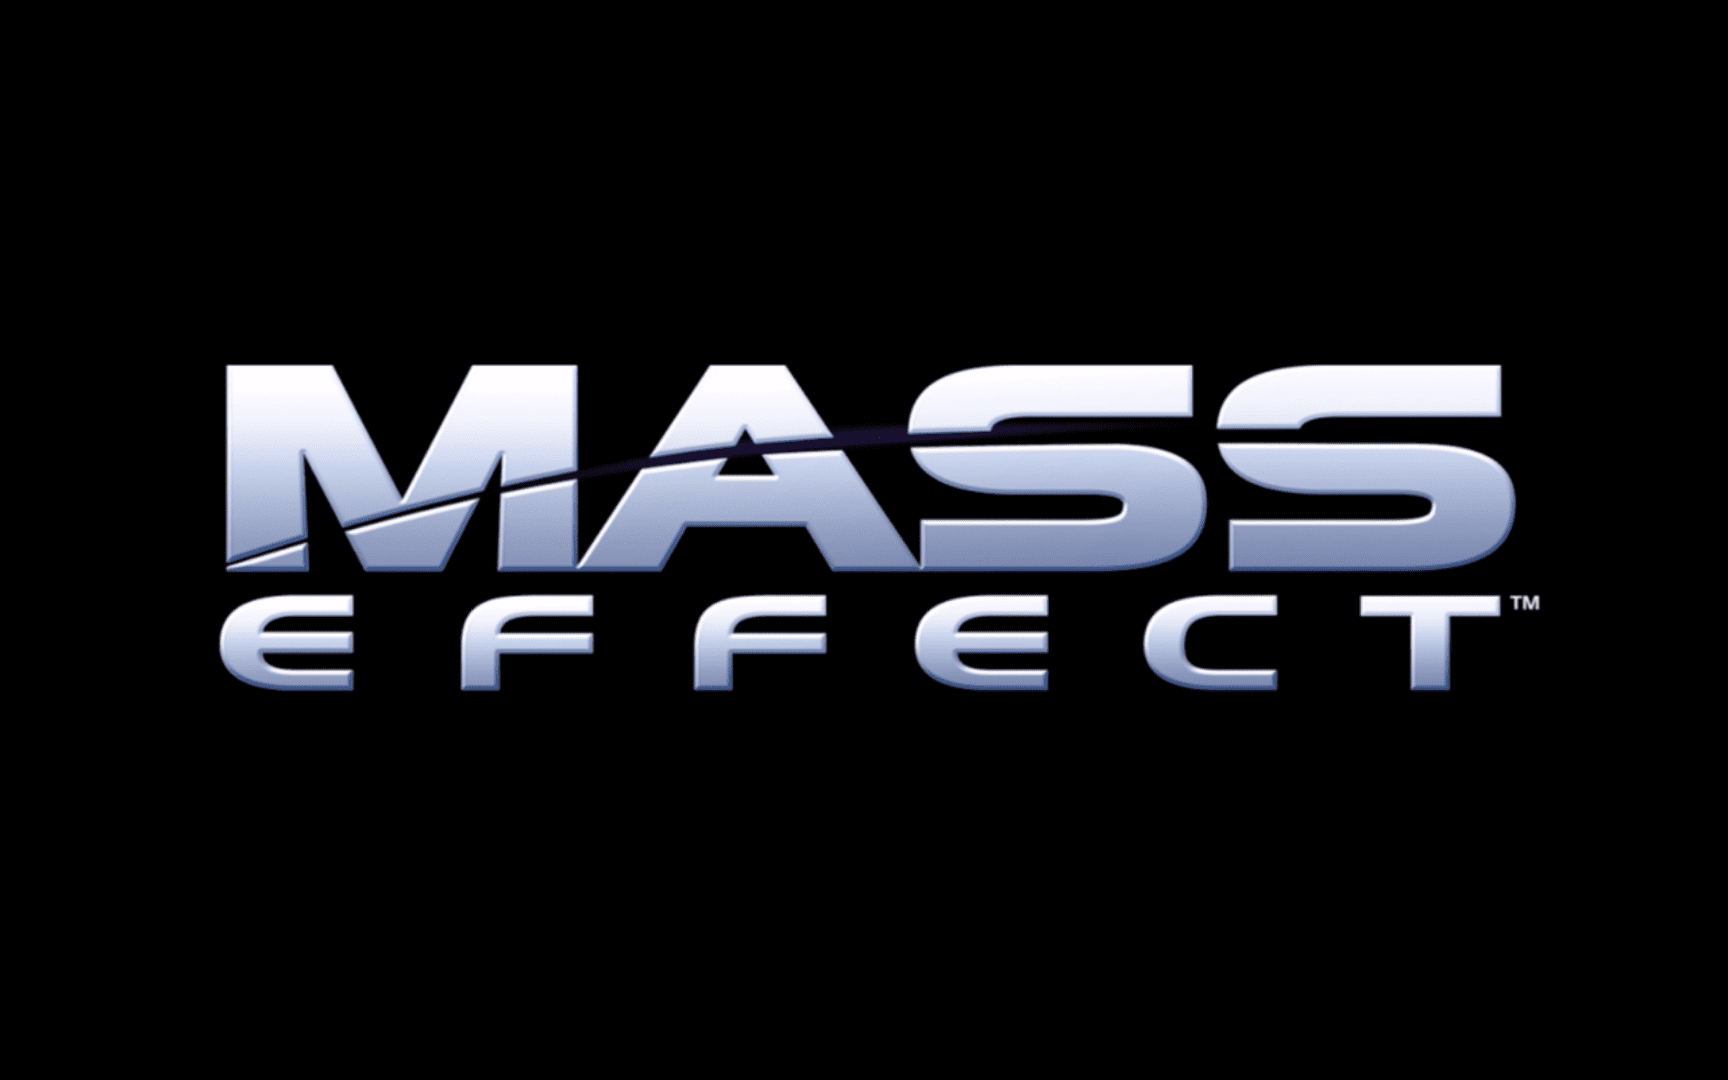 Mass Effect Featured